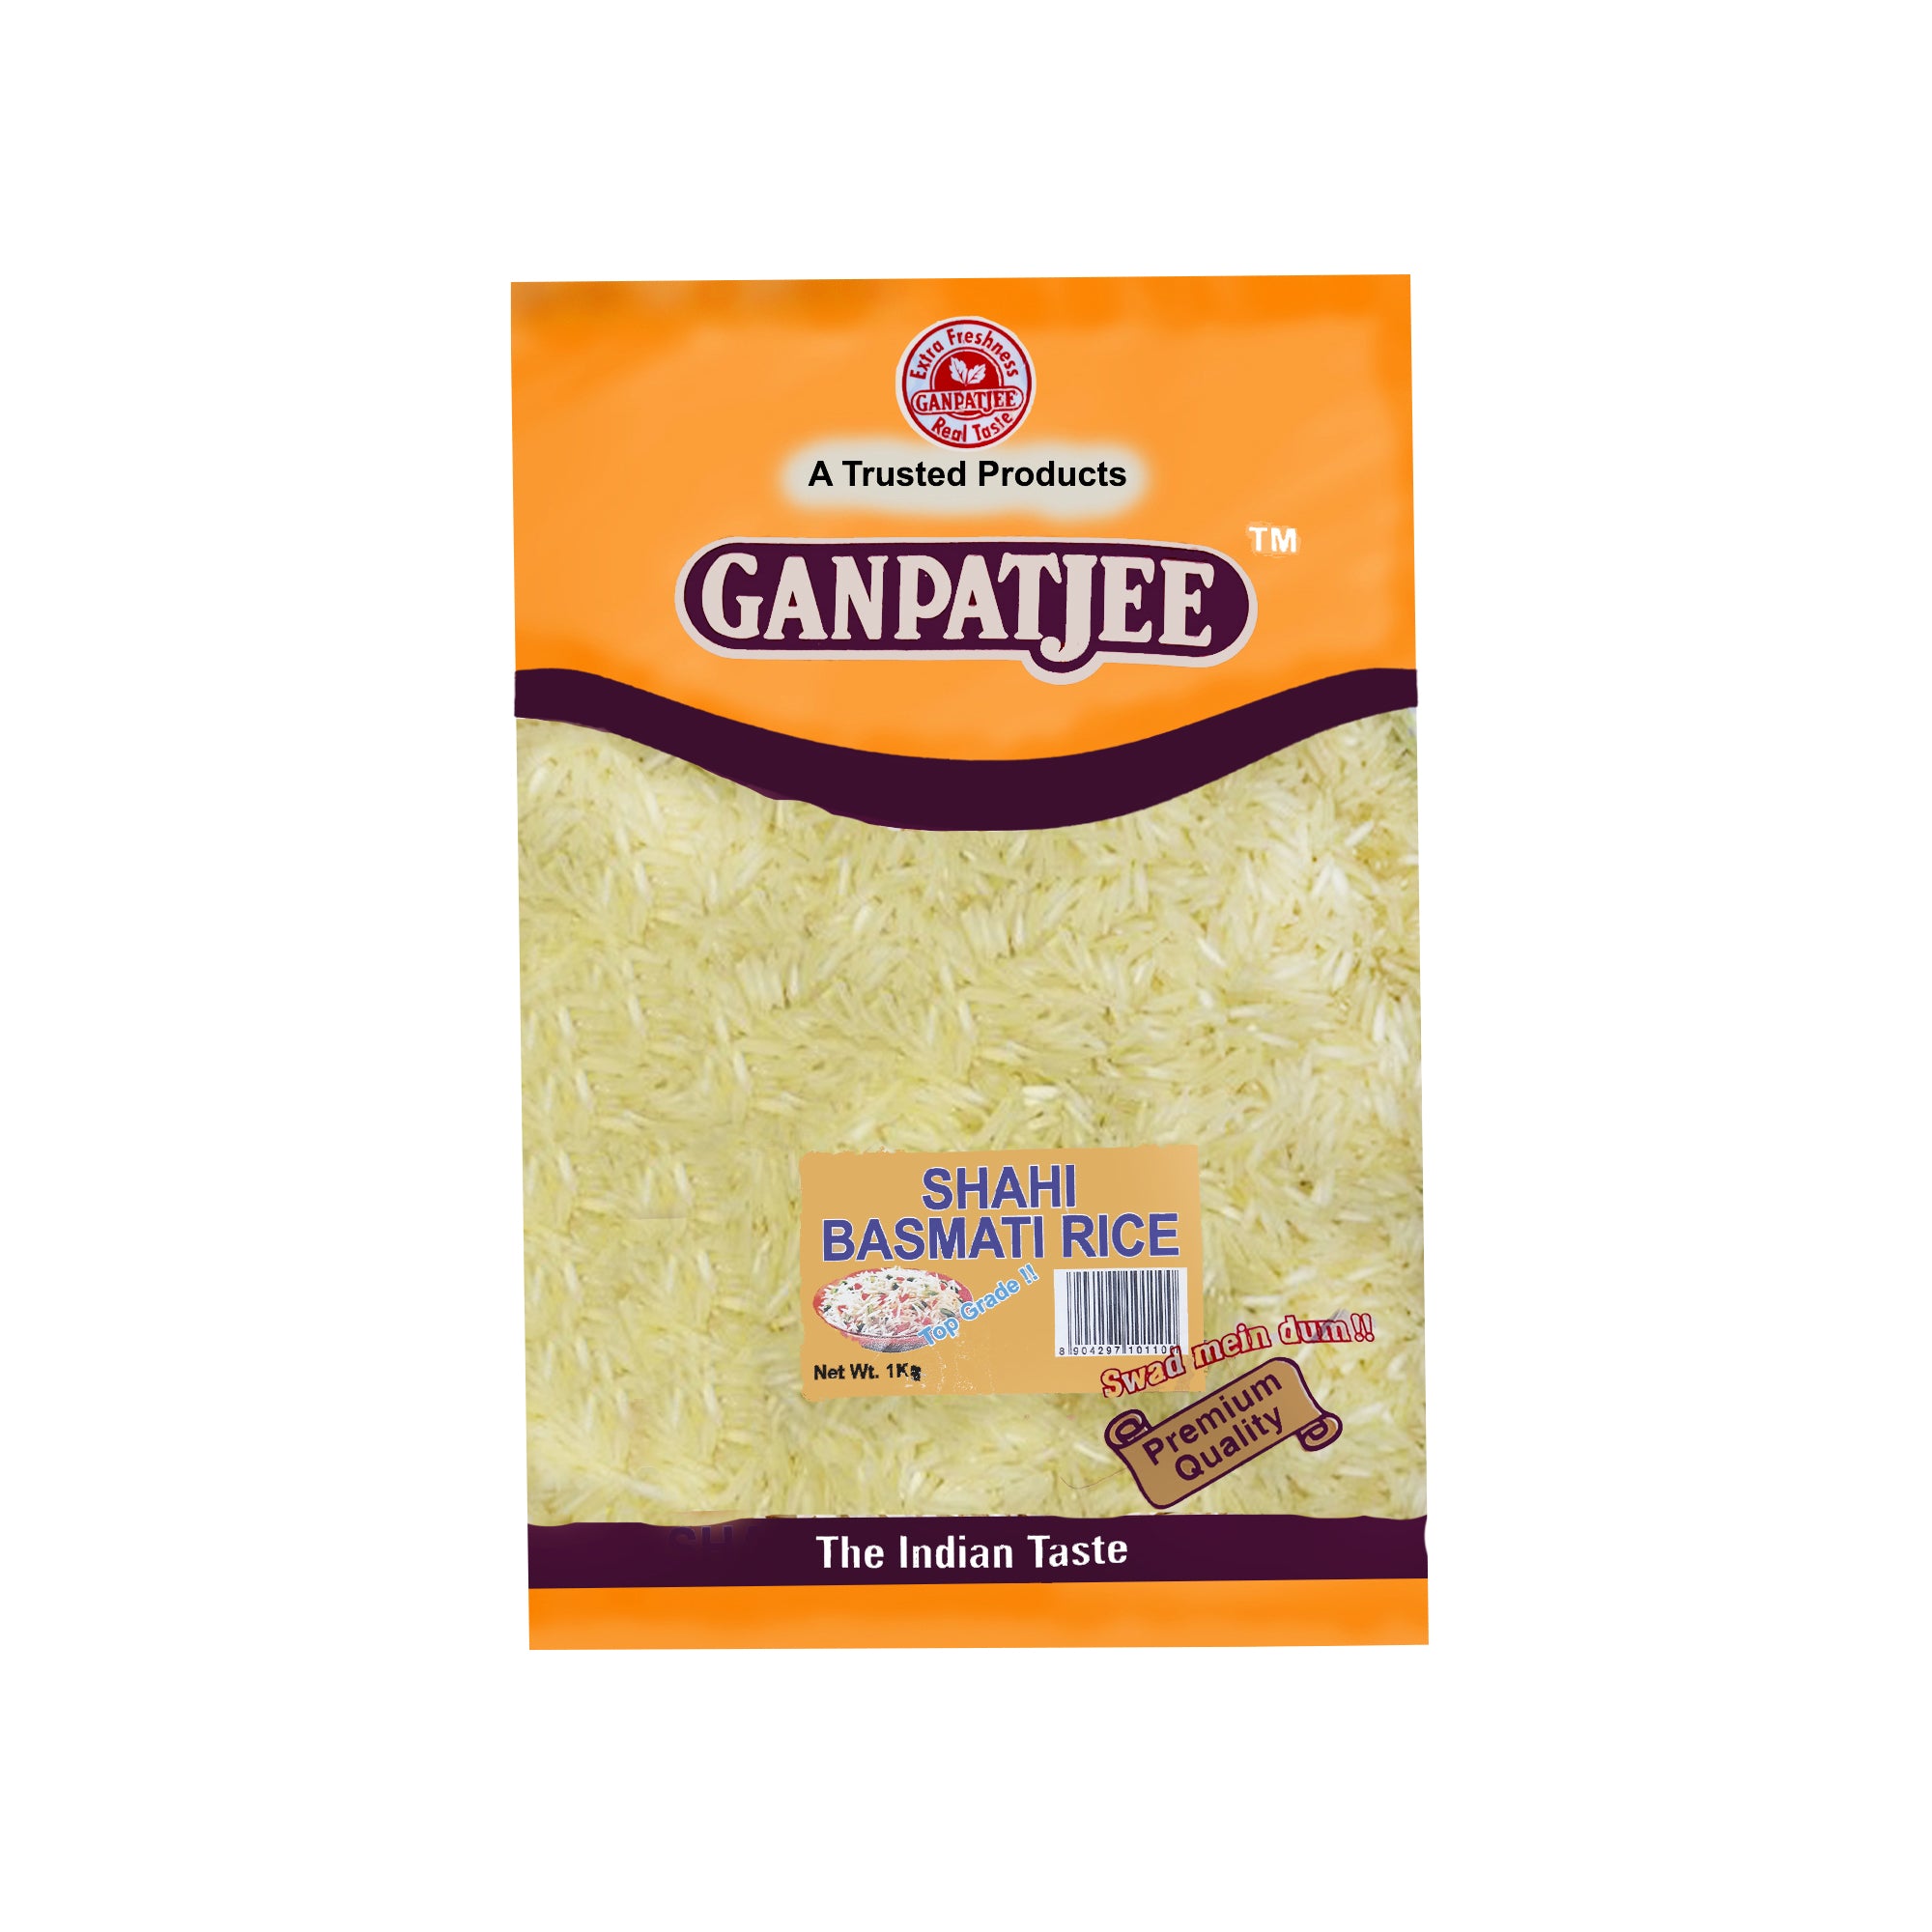 Ganpatjee Shahi Basmati Rice 1kg